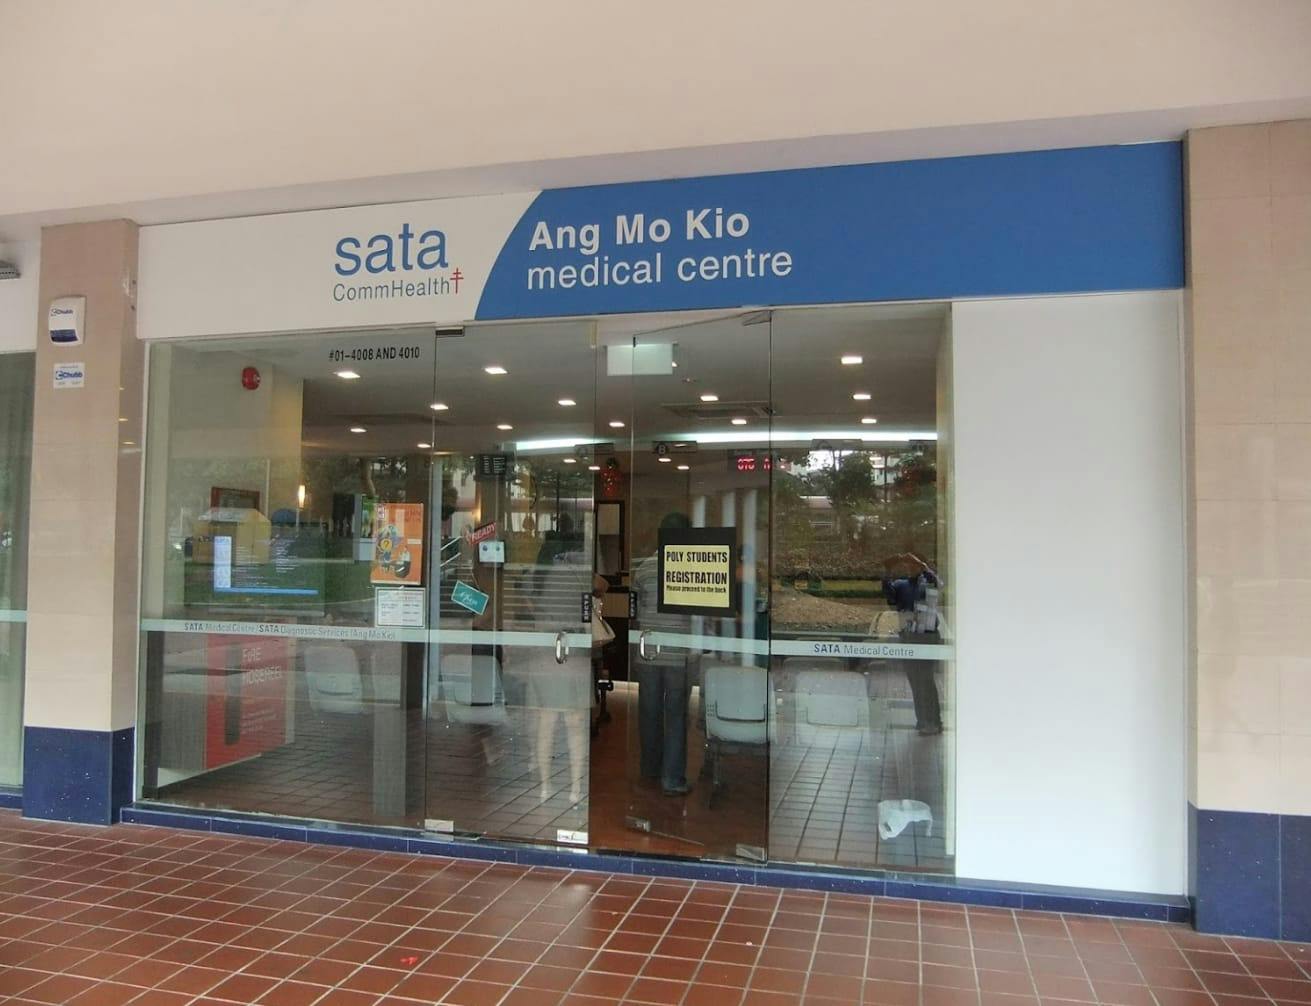 SATA Commhealth Ang Mo Kio Medical Centre